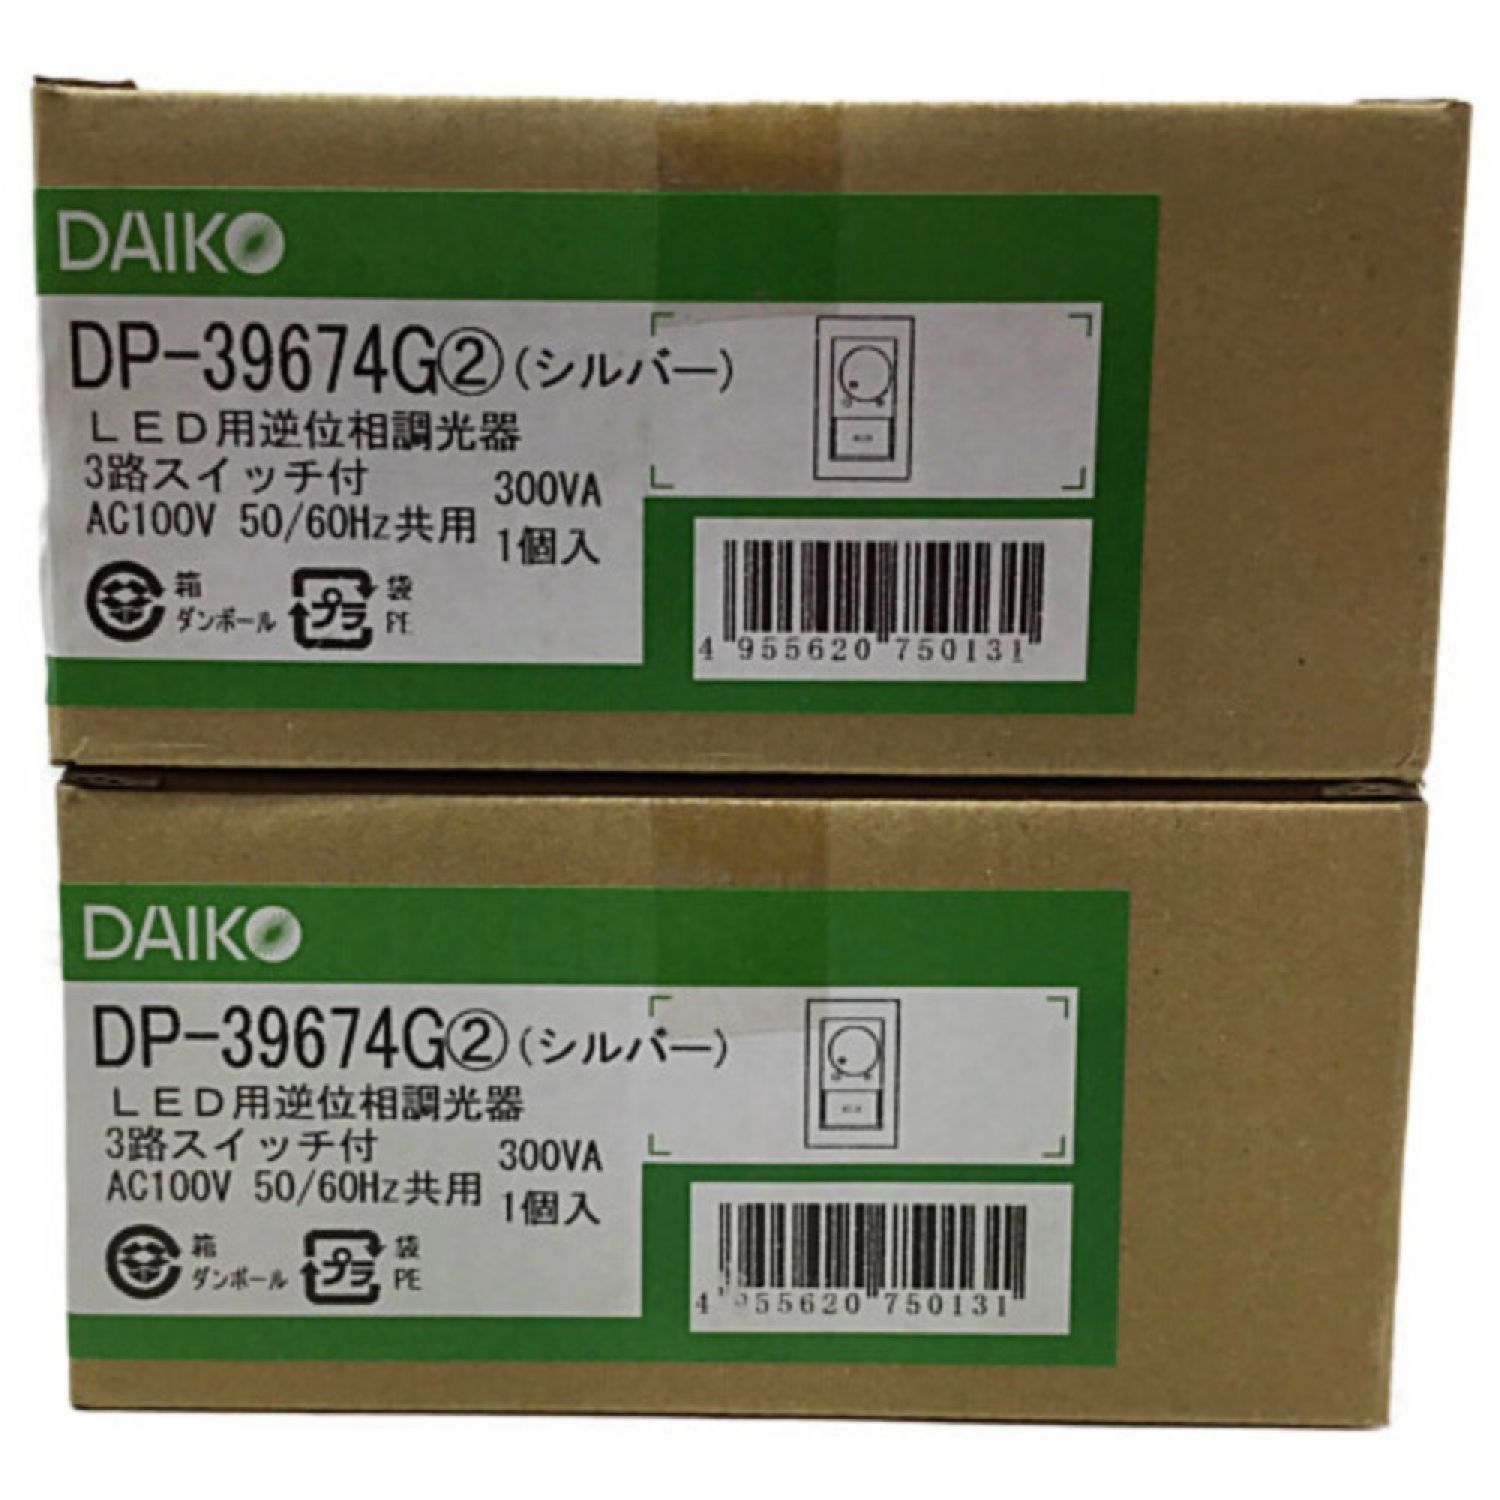 DAIKO ダイコー LED用逆位相調光器 未使用品 2個セット DP-39674G Sランク